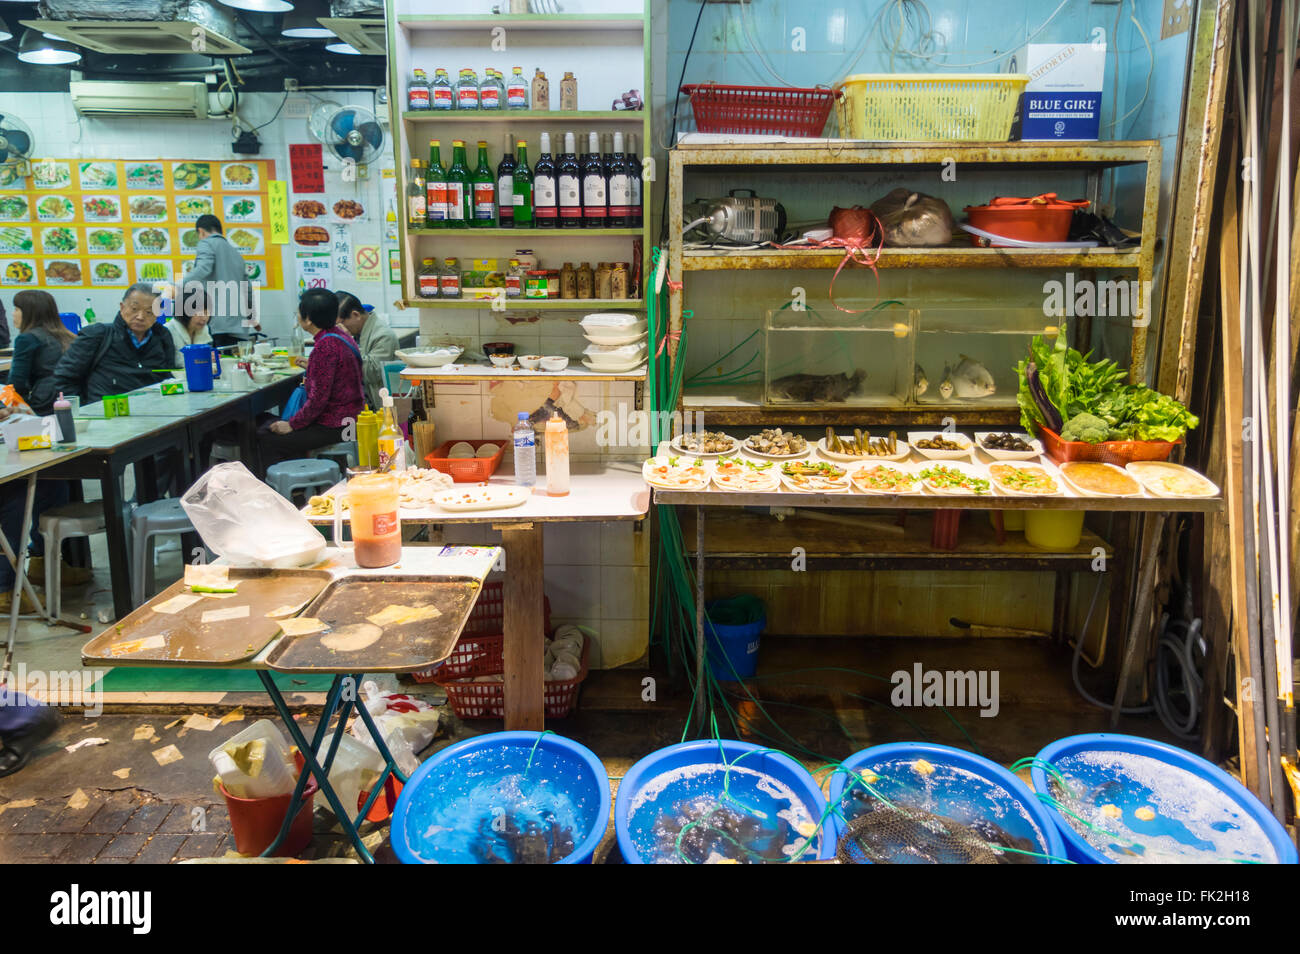 Meeresfrüchte in Eimern und Becken ein einfaches Restaurant in Yau Ma Tei, Kowloon, Hong Kong, in der Nacht zu leben. Stockfoto